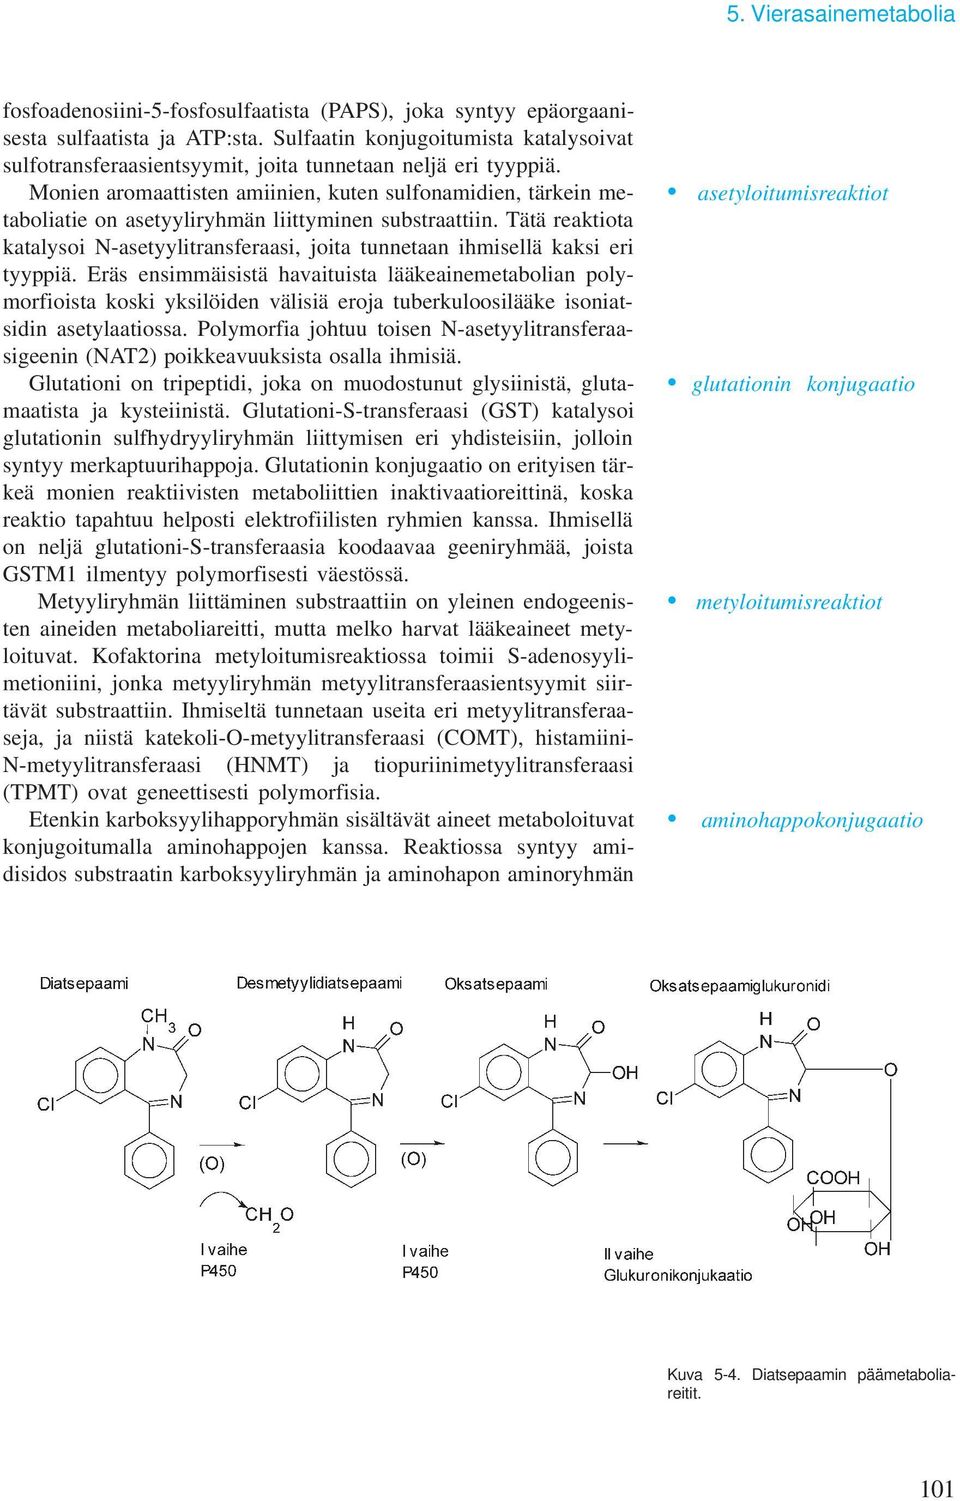 Monien aromaattisten amiinien, kuten sulfonamidien, tärkein metaboliatie on asetyyliryhmän liittyminen substraattiin.